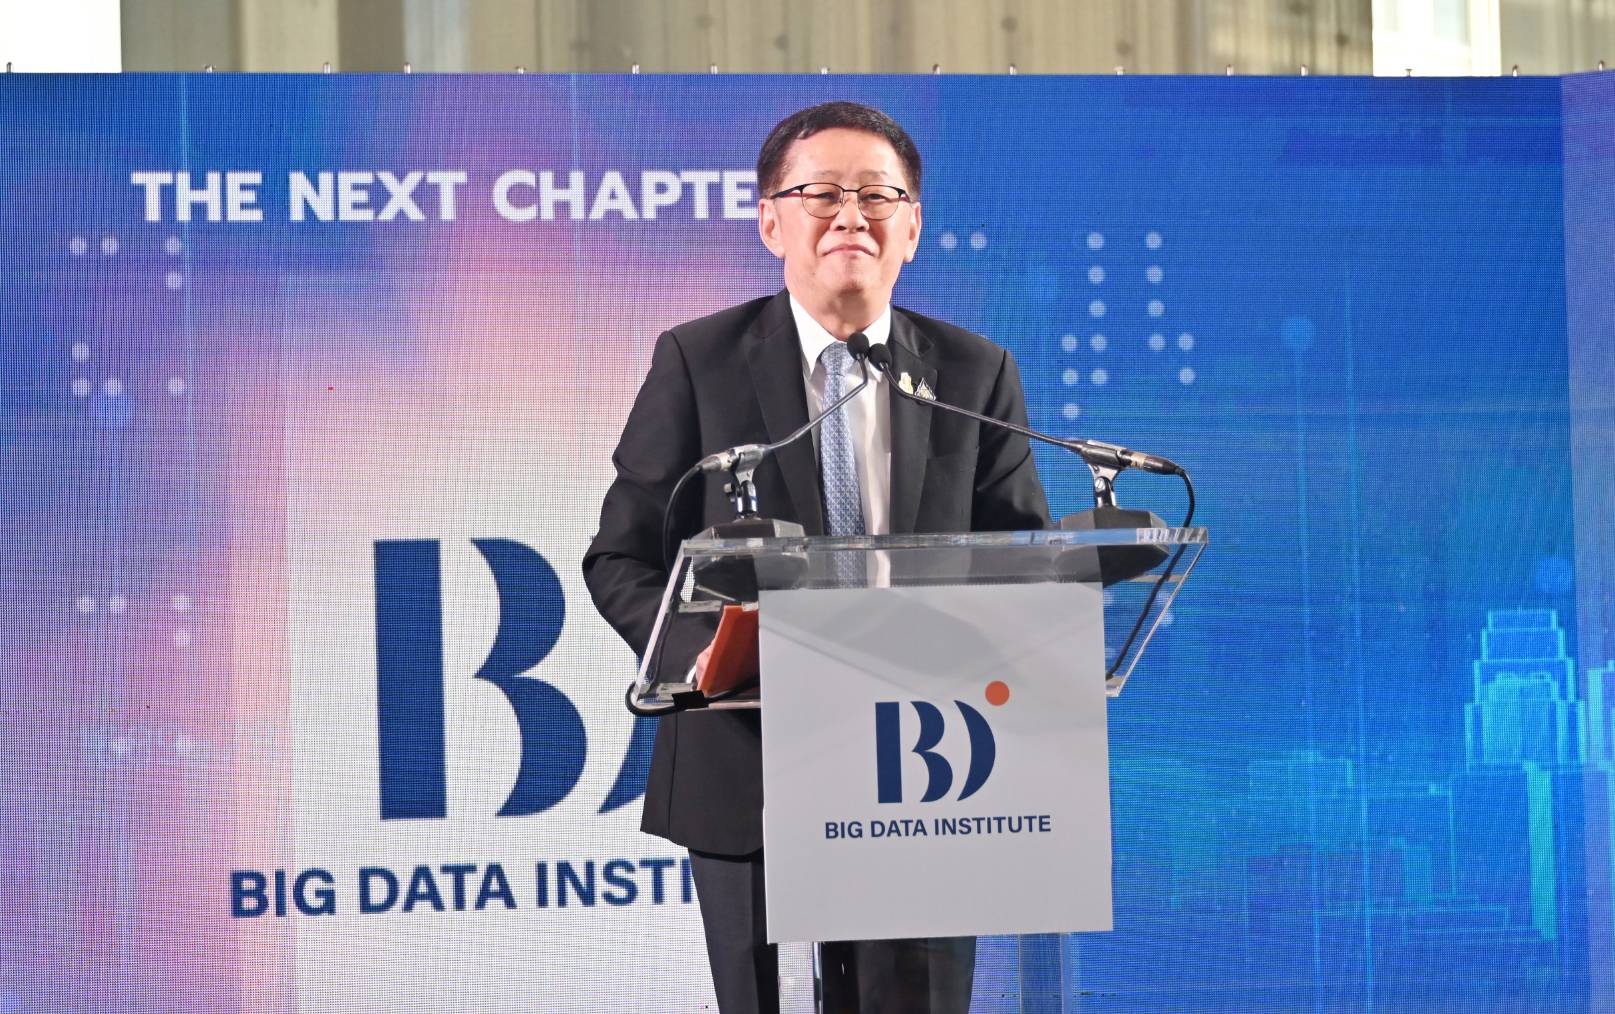 สสช. ร่วมงาน “Power the Future with Data - The Next Chapter of BDI”